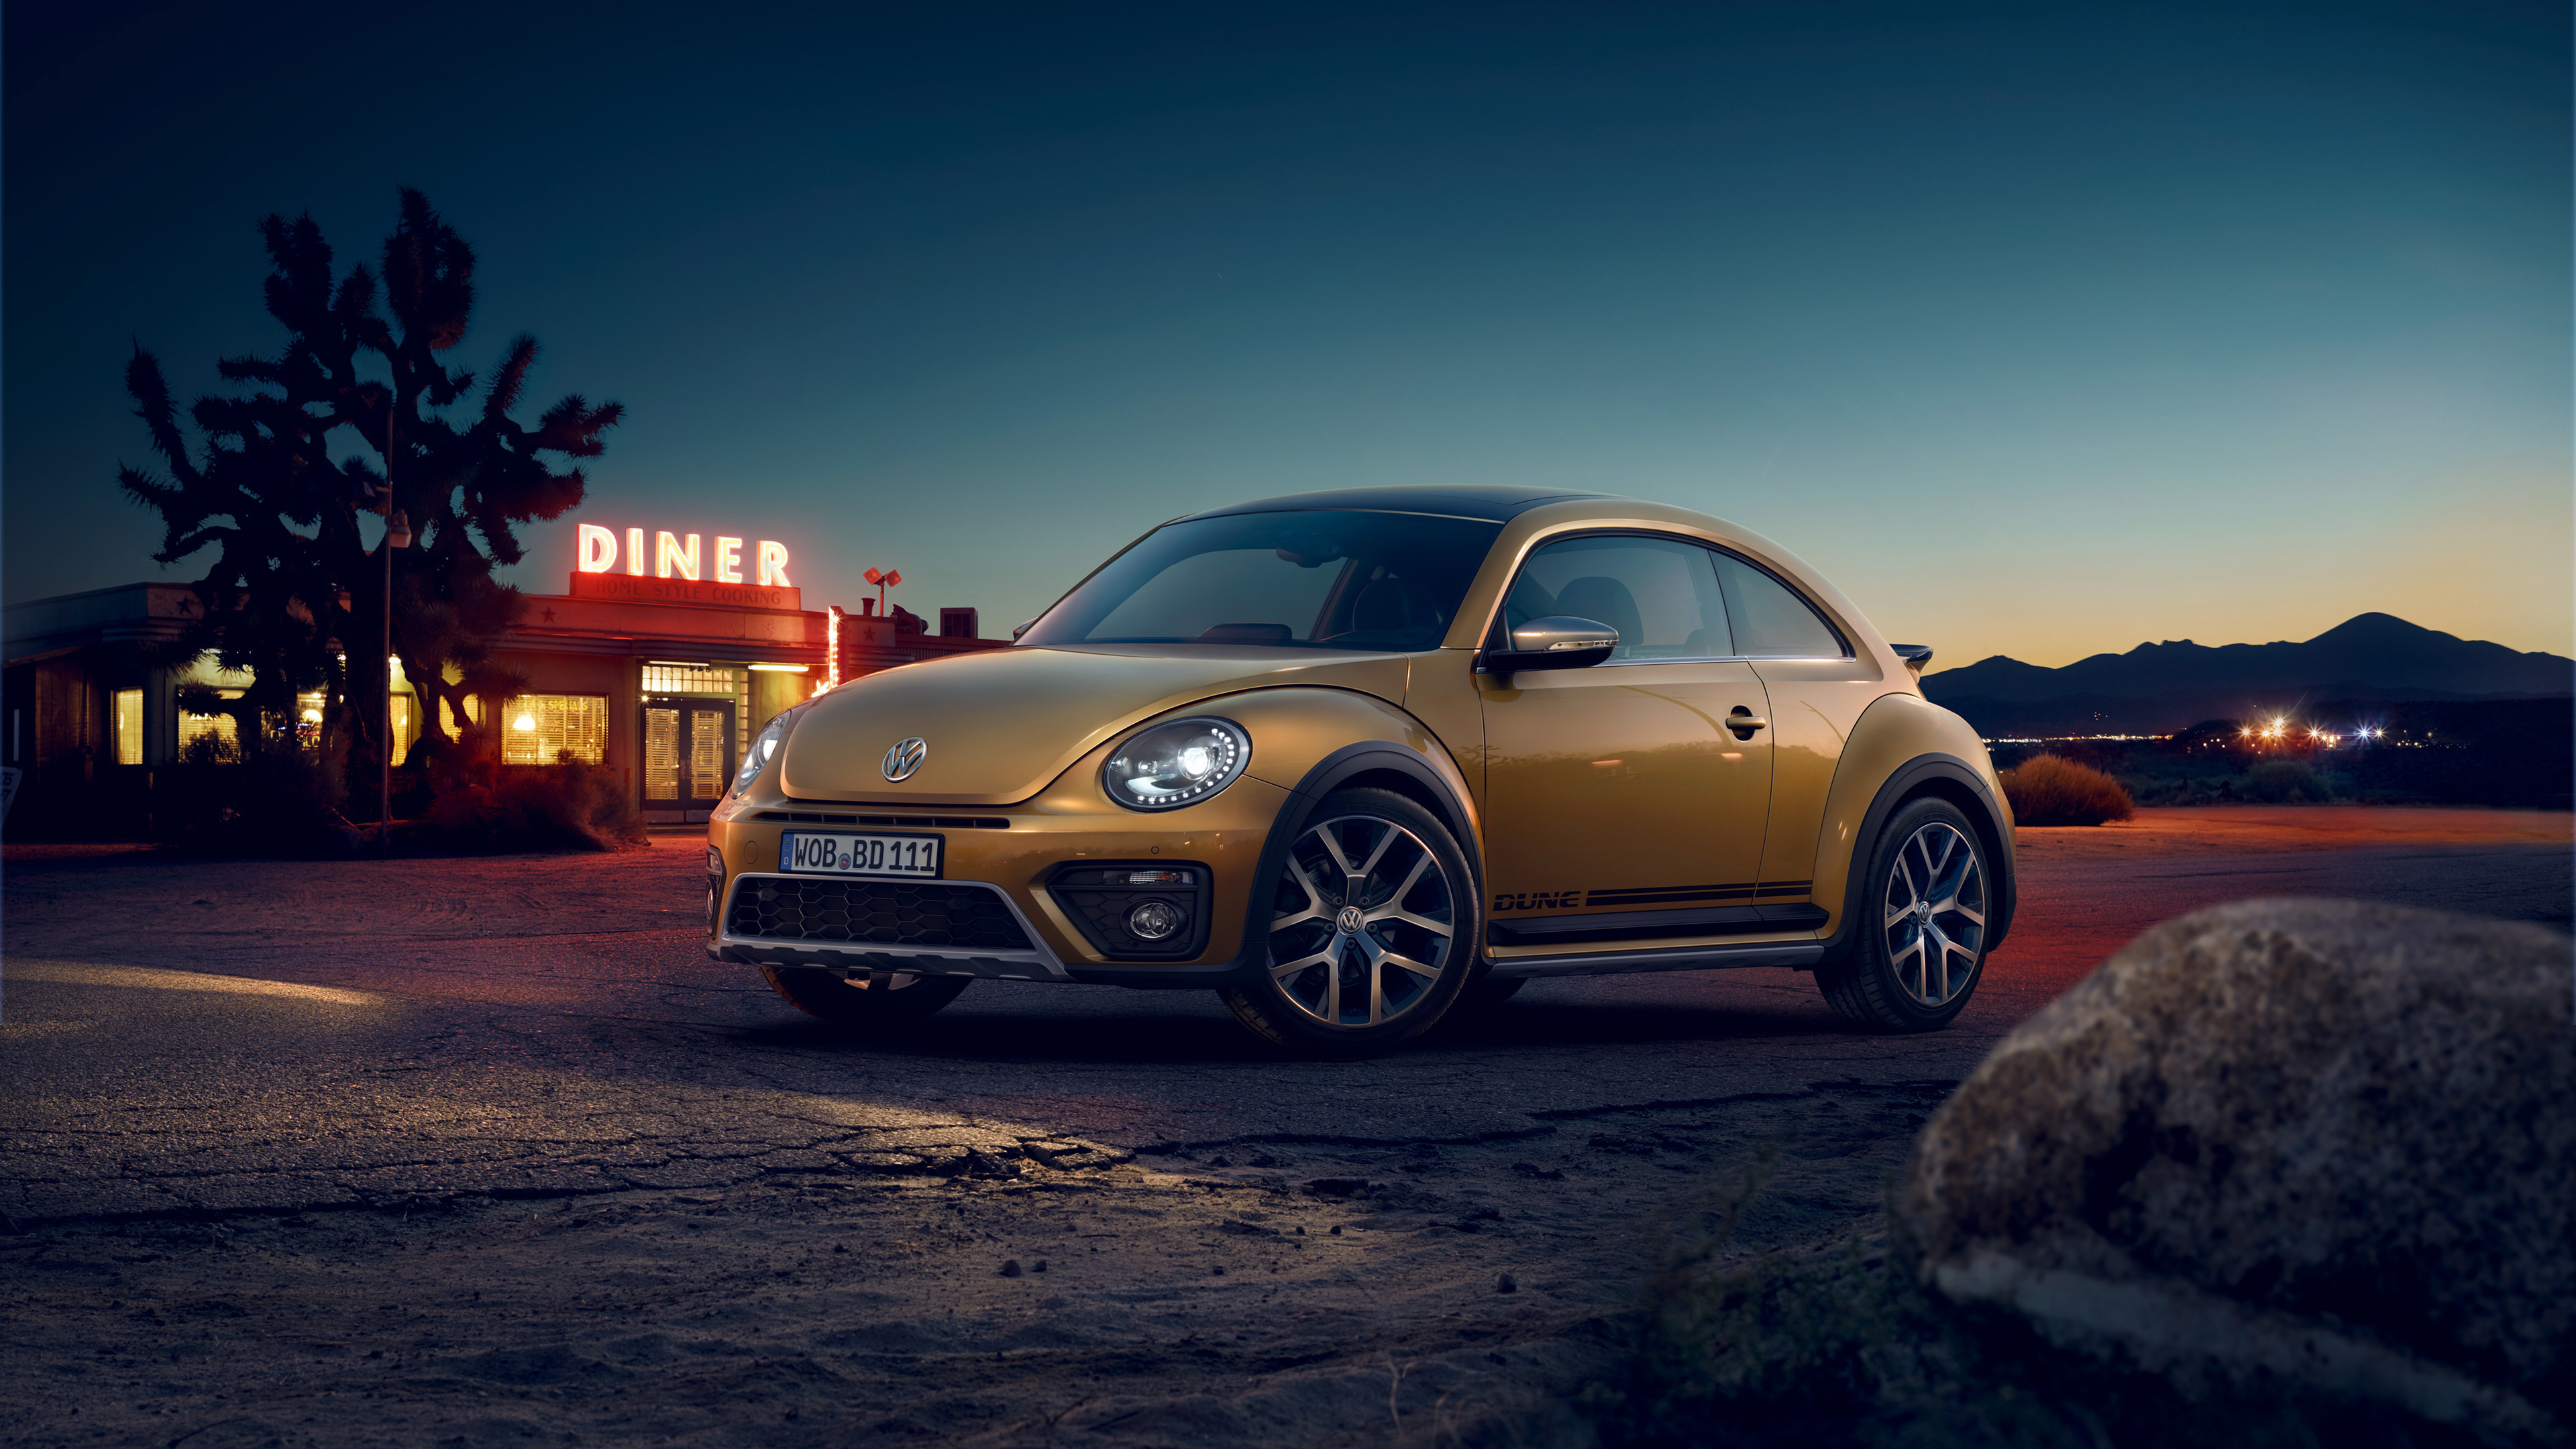 Volkswagen Beetle Dune , HD Wallpaper & Backgrounds